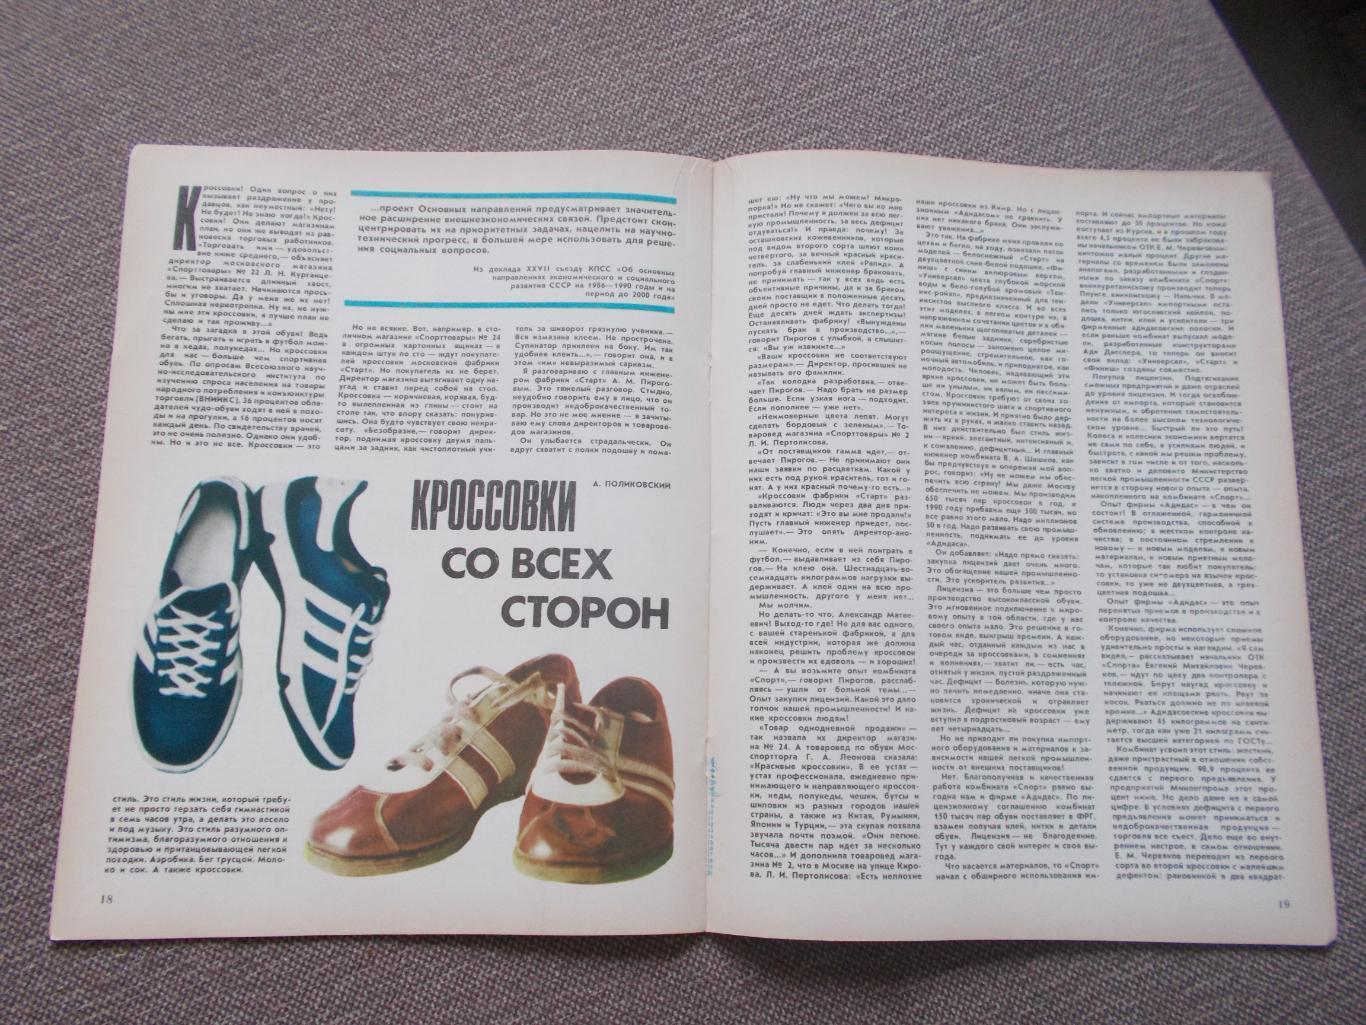 Журнал СССР :Ровесник№ 6 (июнь) 1986 г. (Молодежный музыкальный журнал) 5